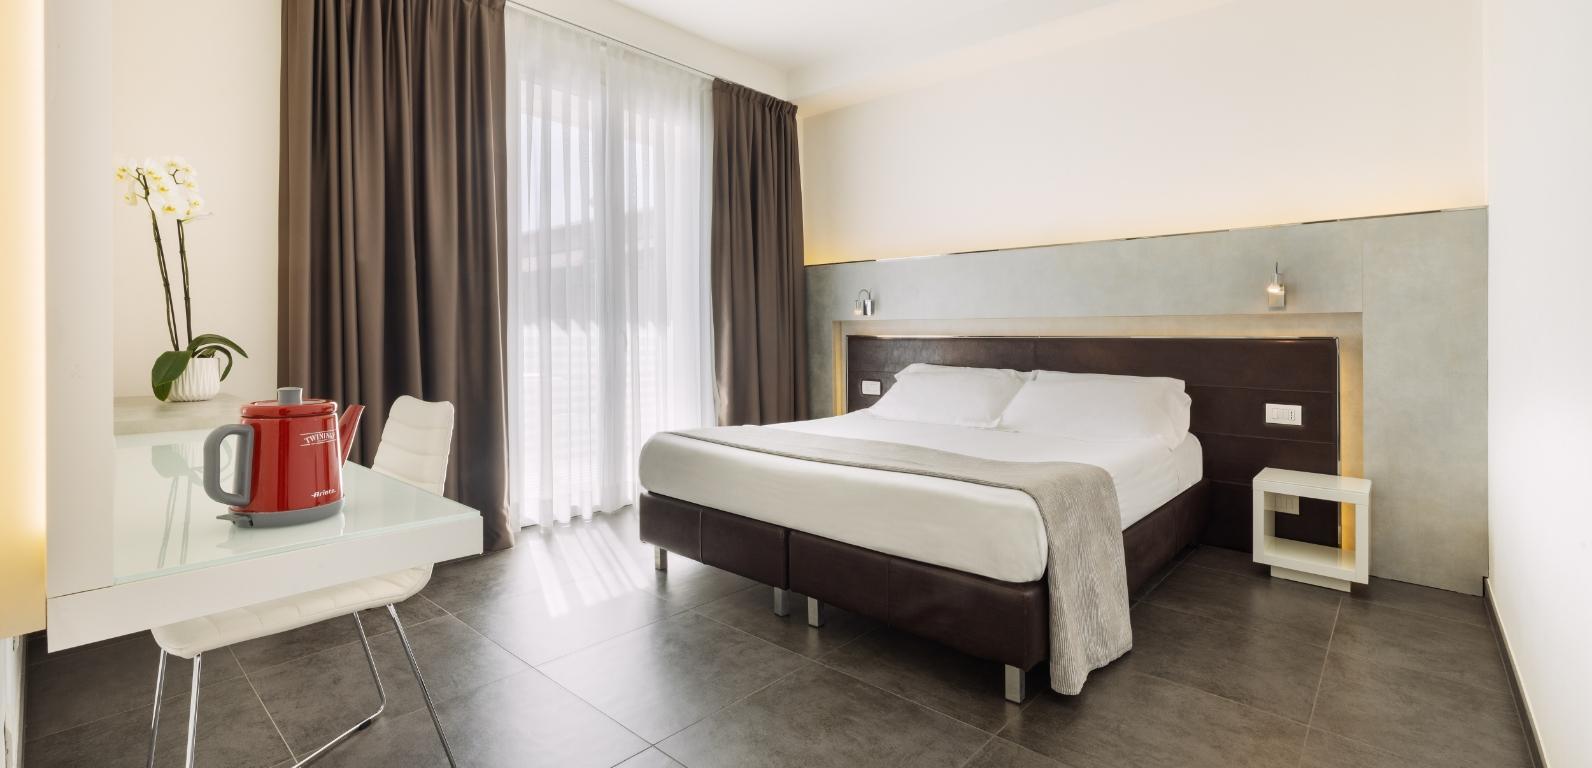 baldininihotel en relax-rooms-hotel-torre-pedrera 015